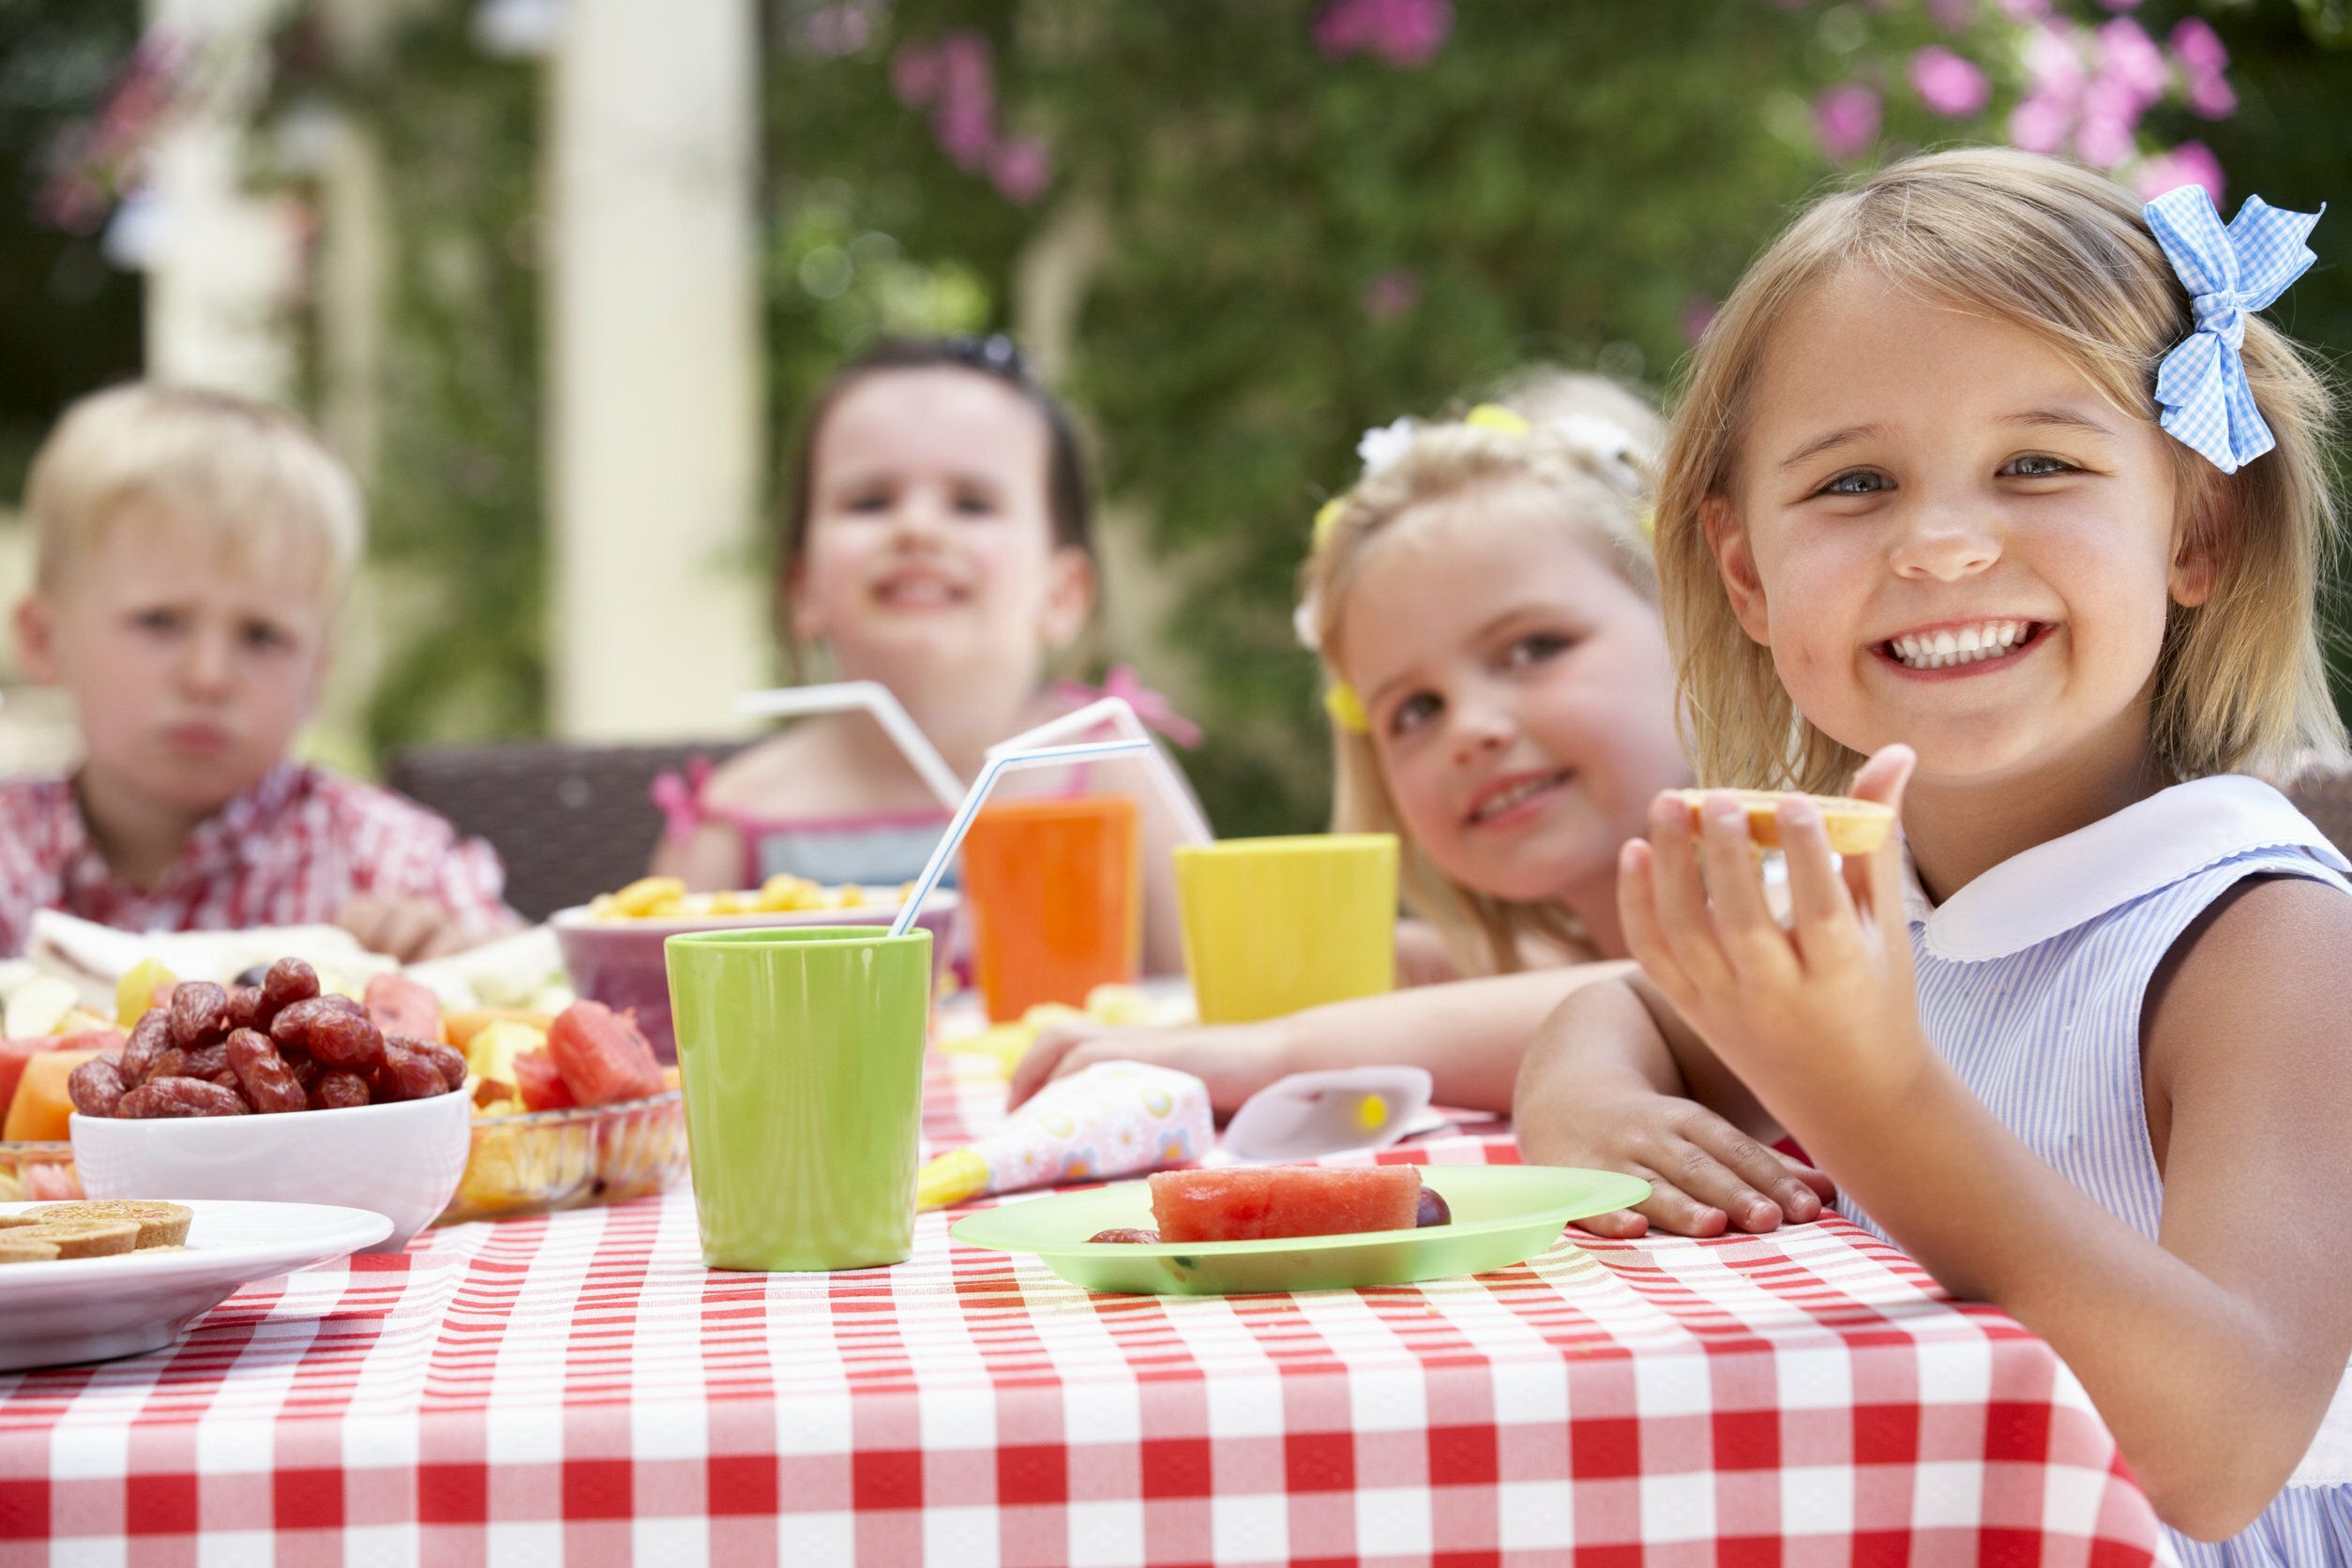 Auf dem Bild sind 4 kinder, 2 Jungen und 2 Mädchen zu sehen, die an einem gedeckten Tisch sitzen und Kuchen essen und sich darüber freuen und lachen.